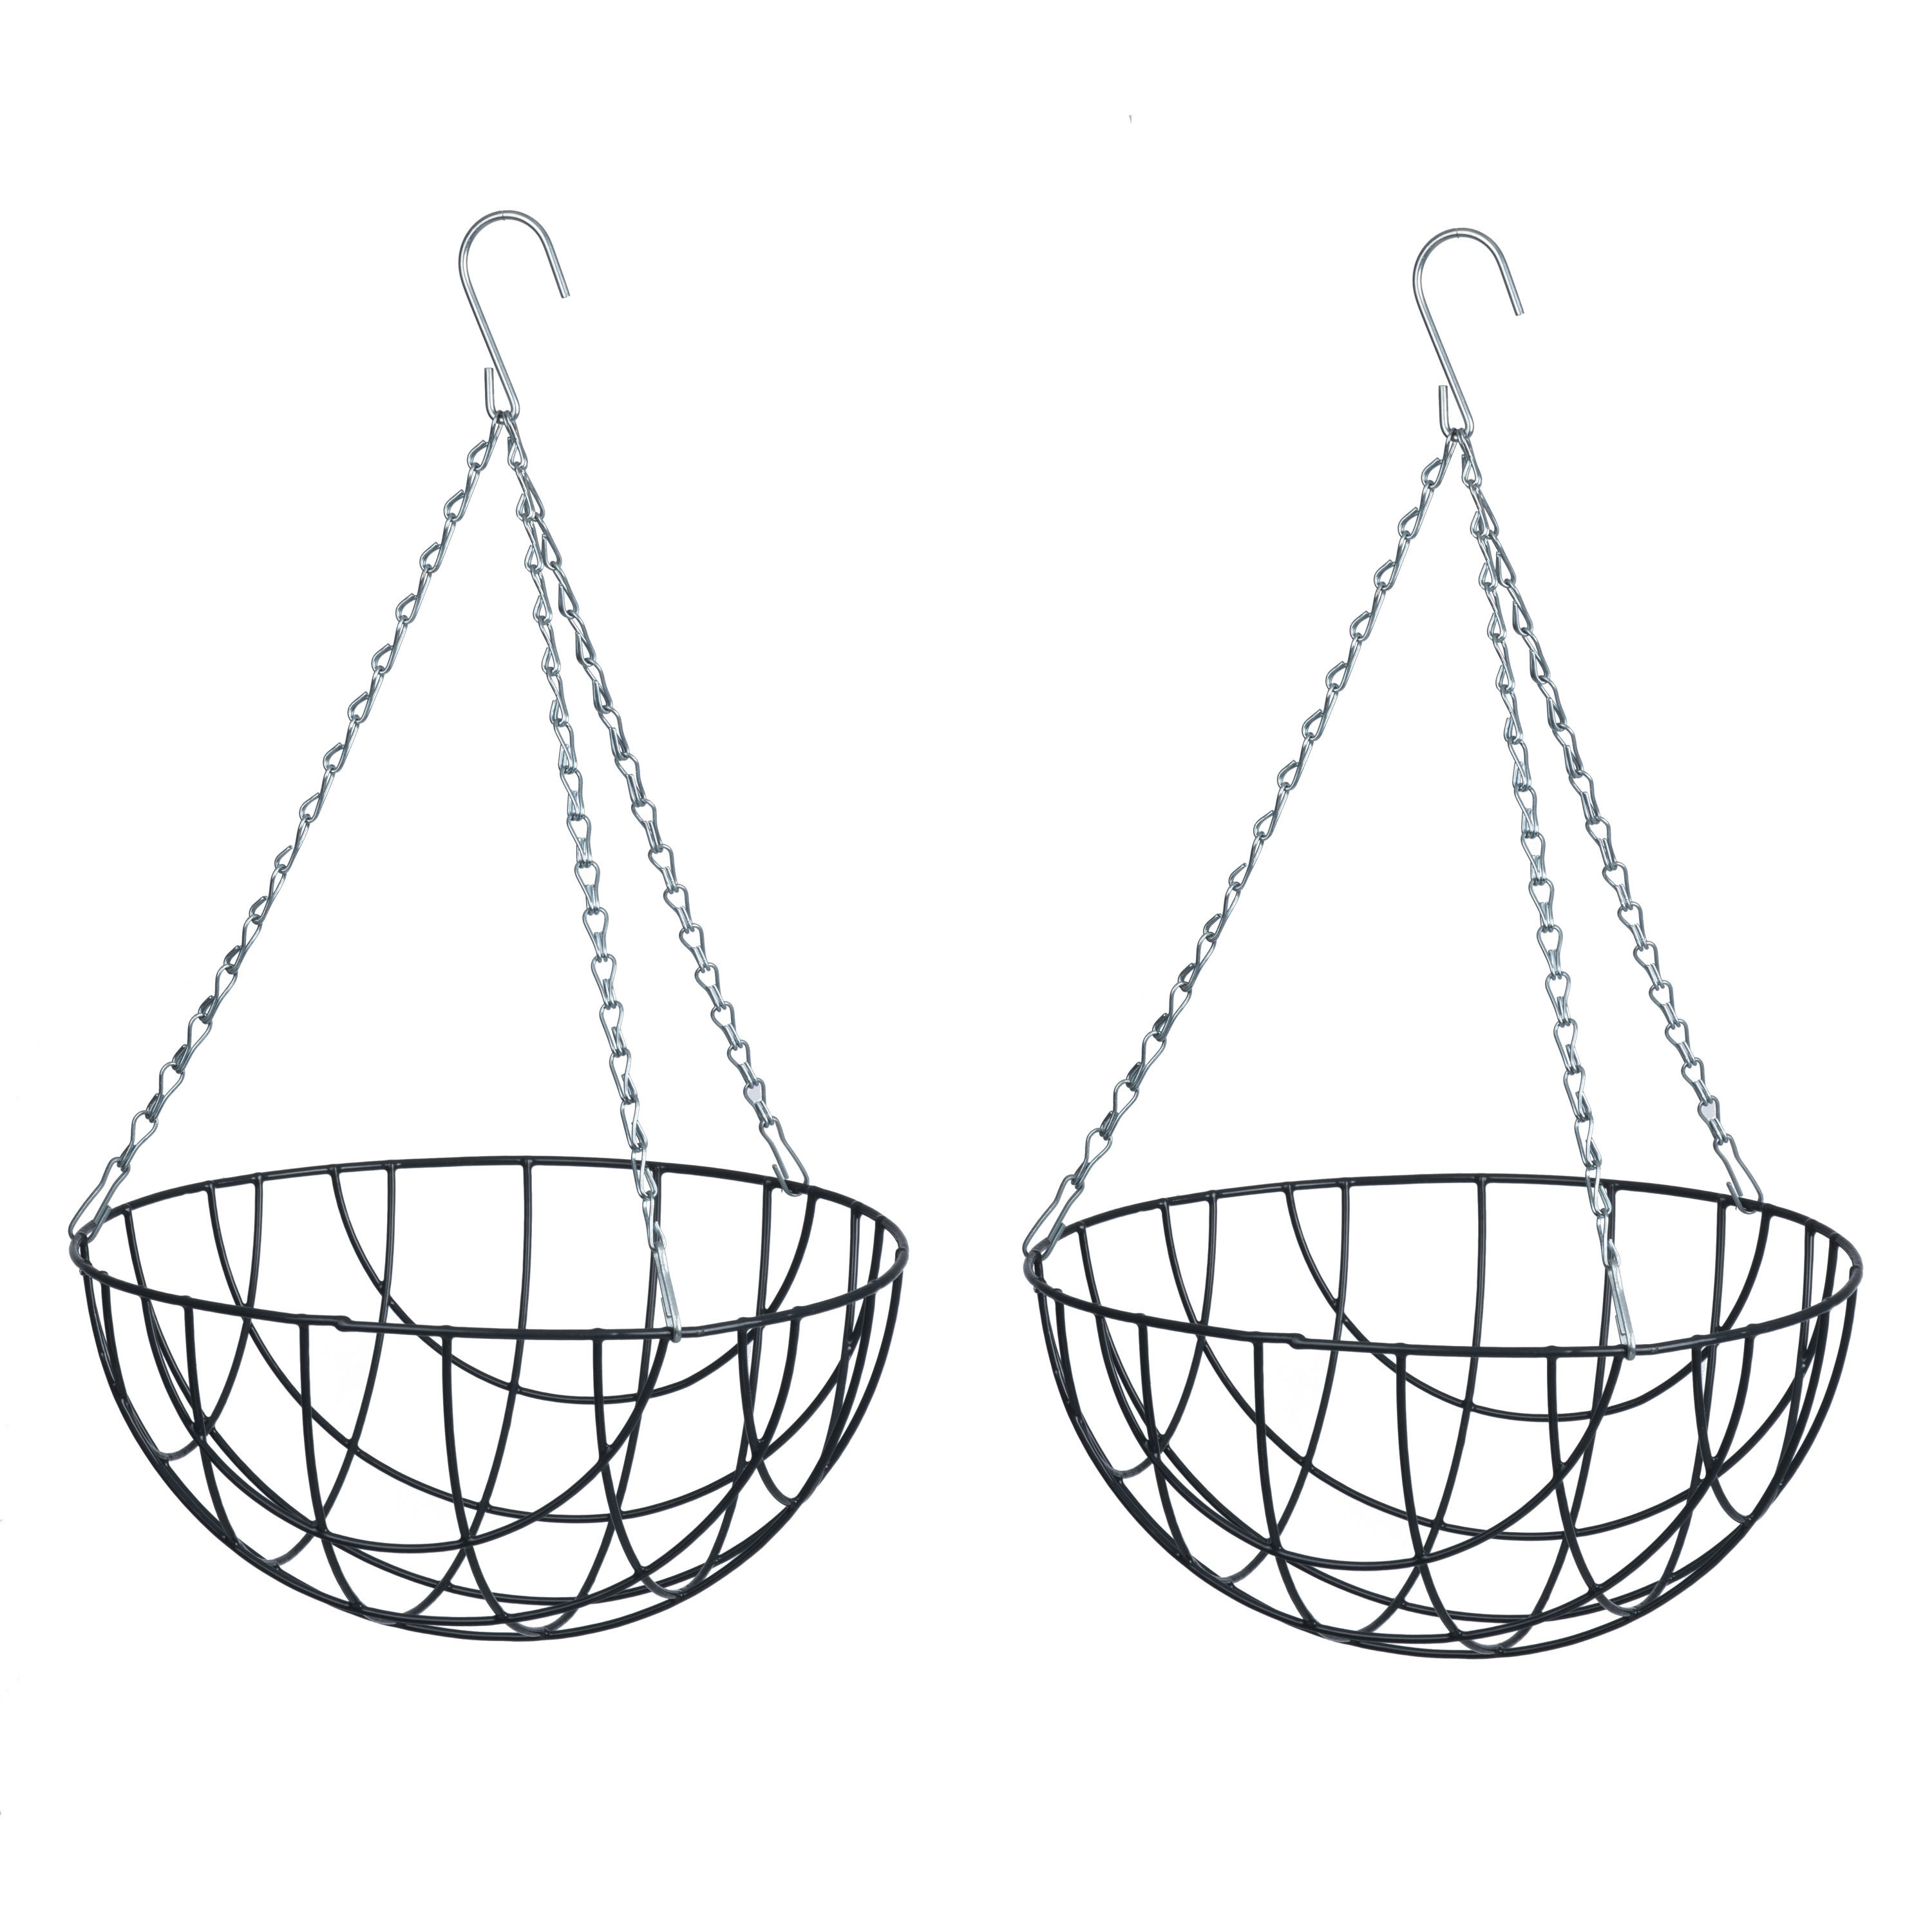 2x stuks hangende plantenbak metaaldraad grijs met ketting H17 x D35 cm hanging basket